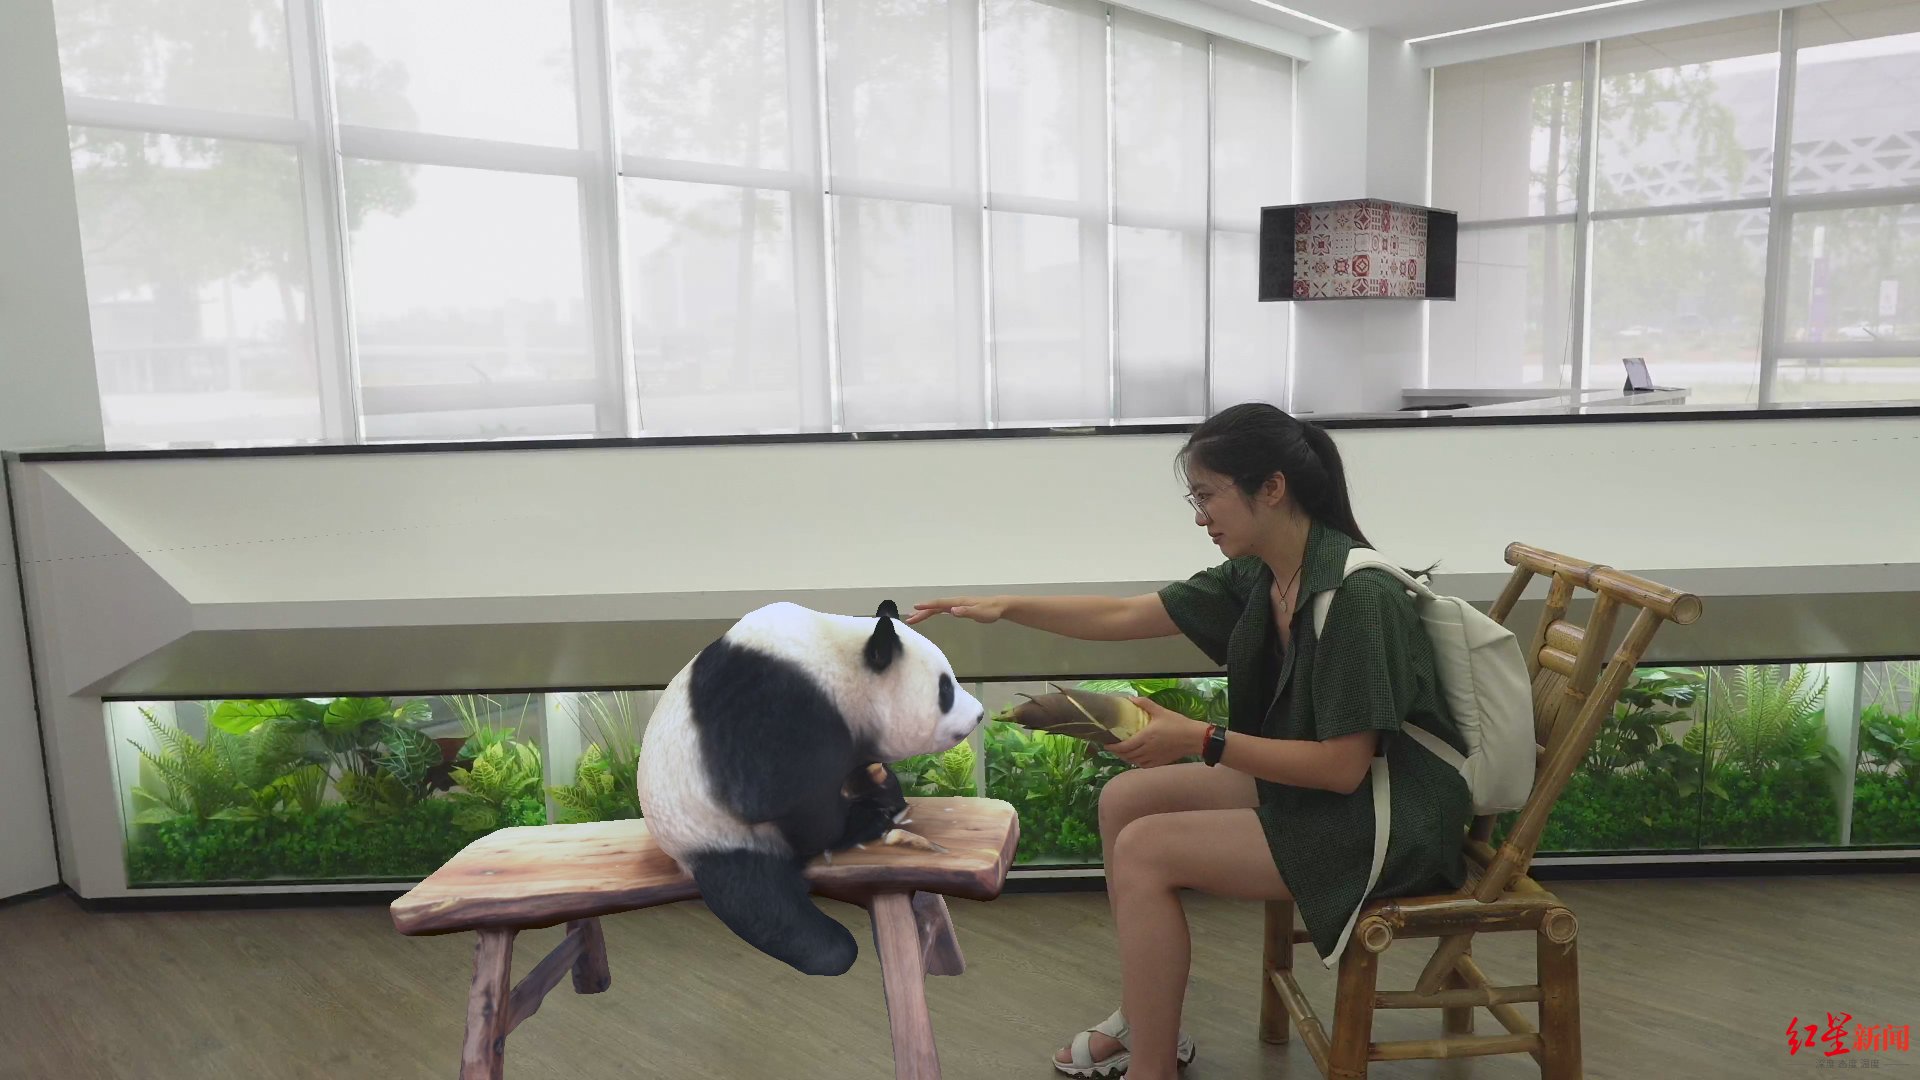 大熊猫AR互动、AI督导*分类……媒体+市民代表抢先体验大运科技魅力插图